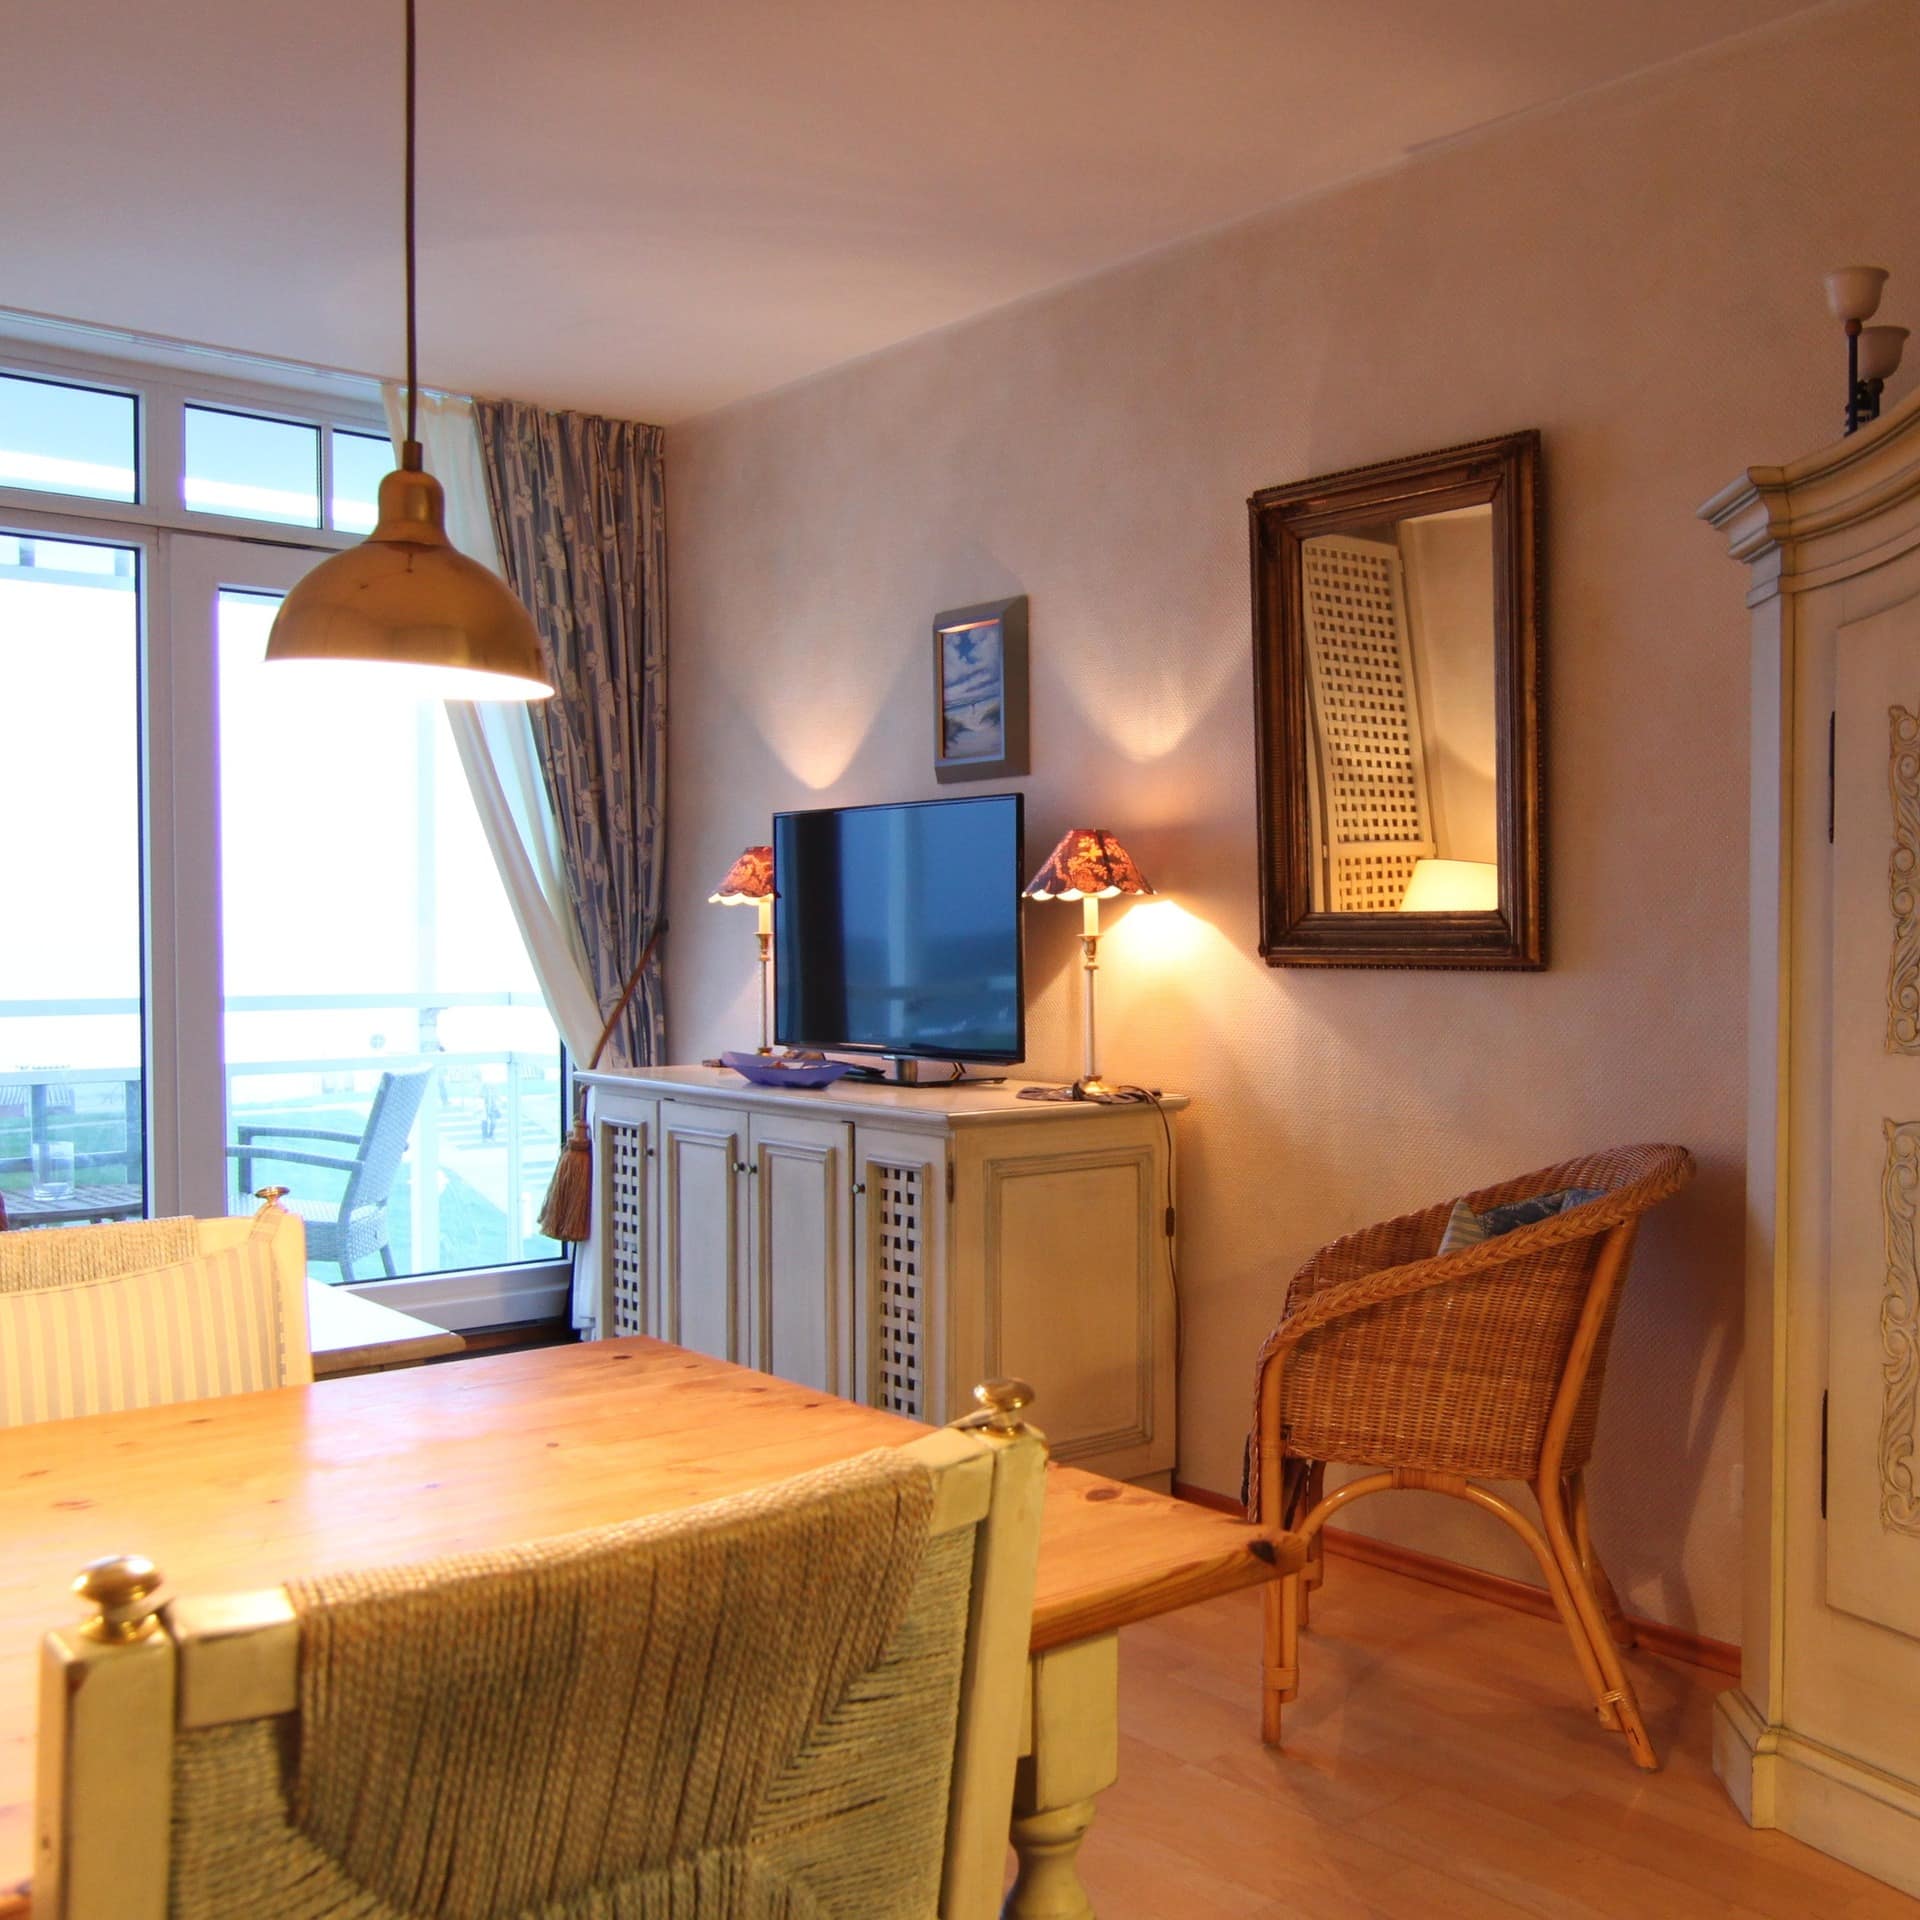 Wohnzimmer einer gemütlichen Ferienwohnung von privat mit Meerblick auf Norderney